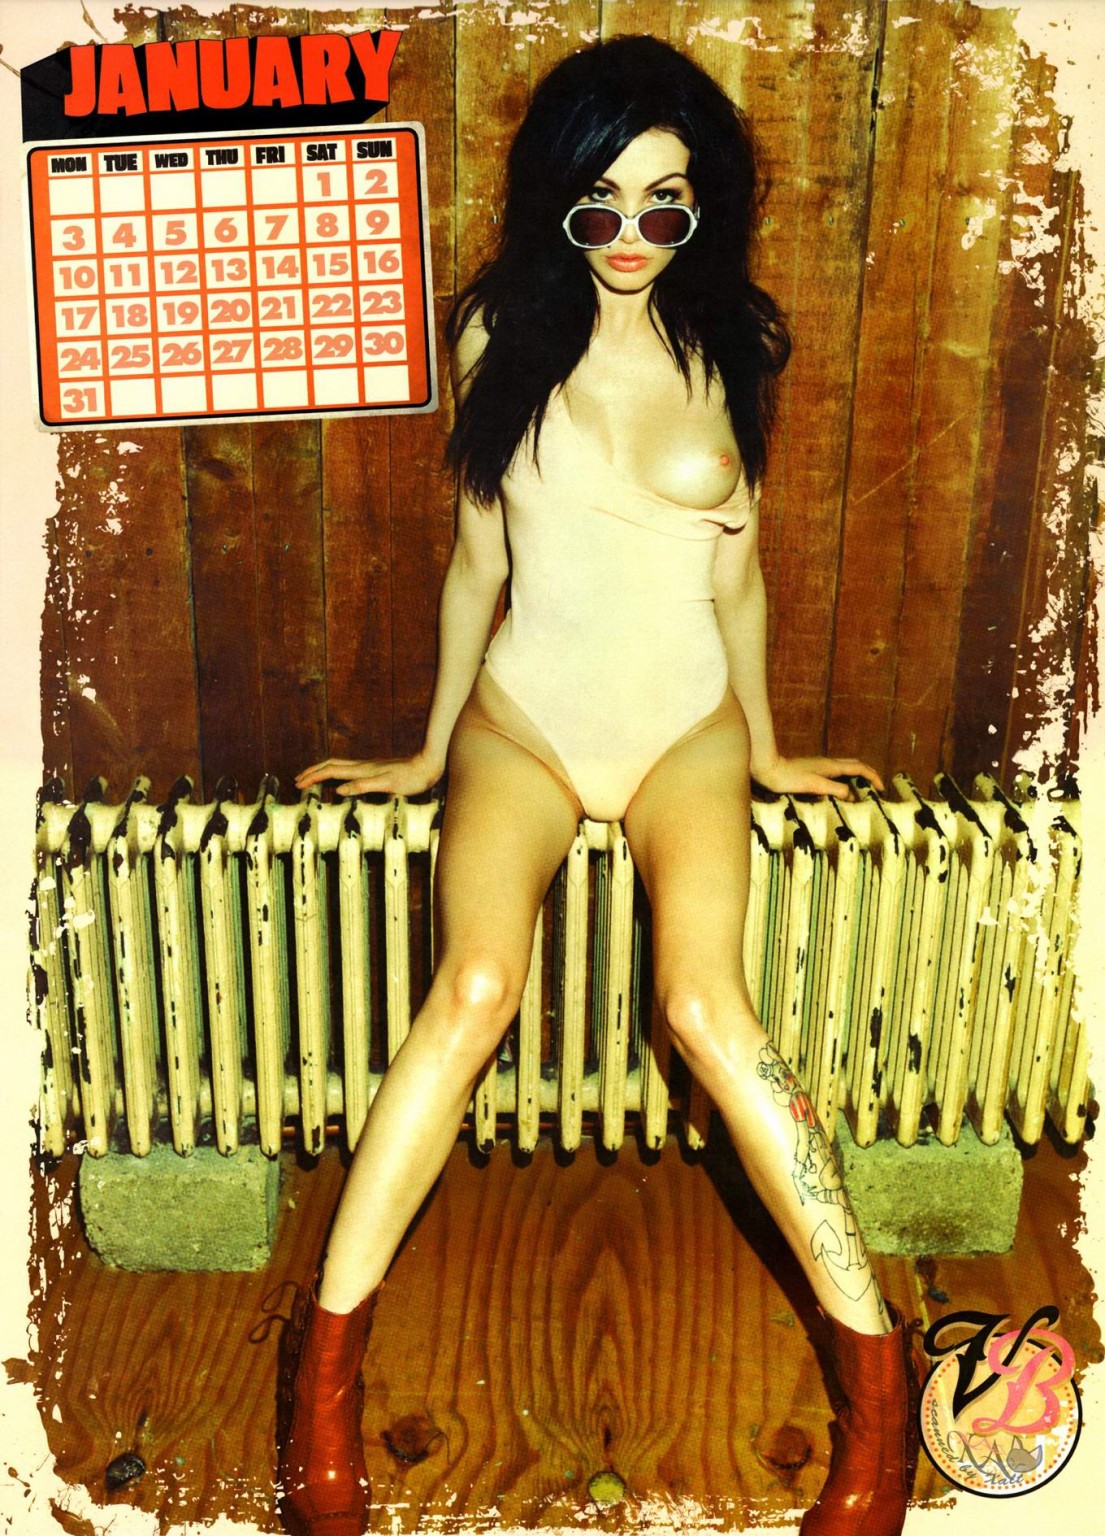 Vikki soffia in posa nuda per il suo calendario ufficiale 2011
 #75328336